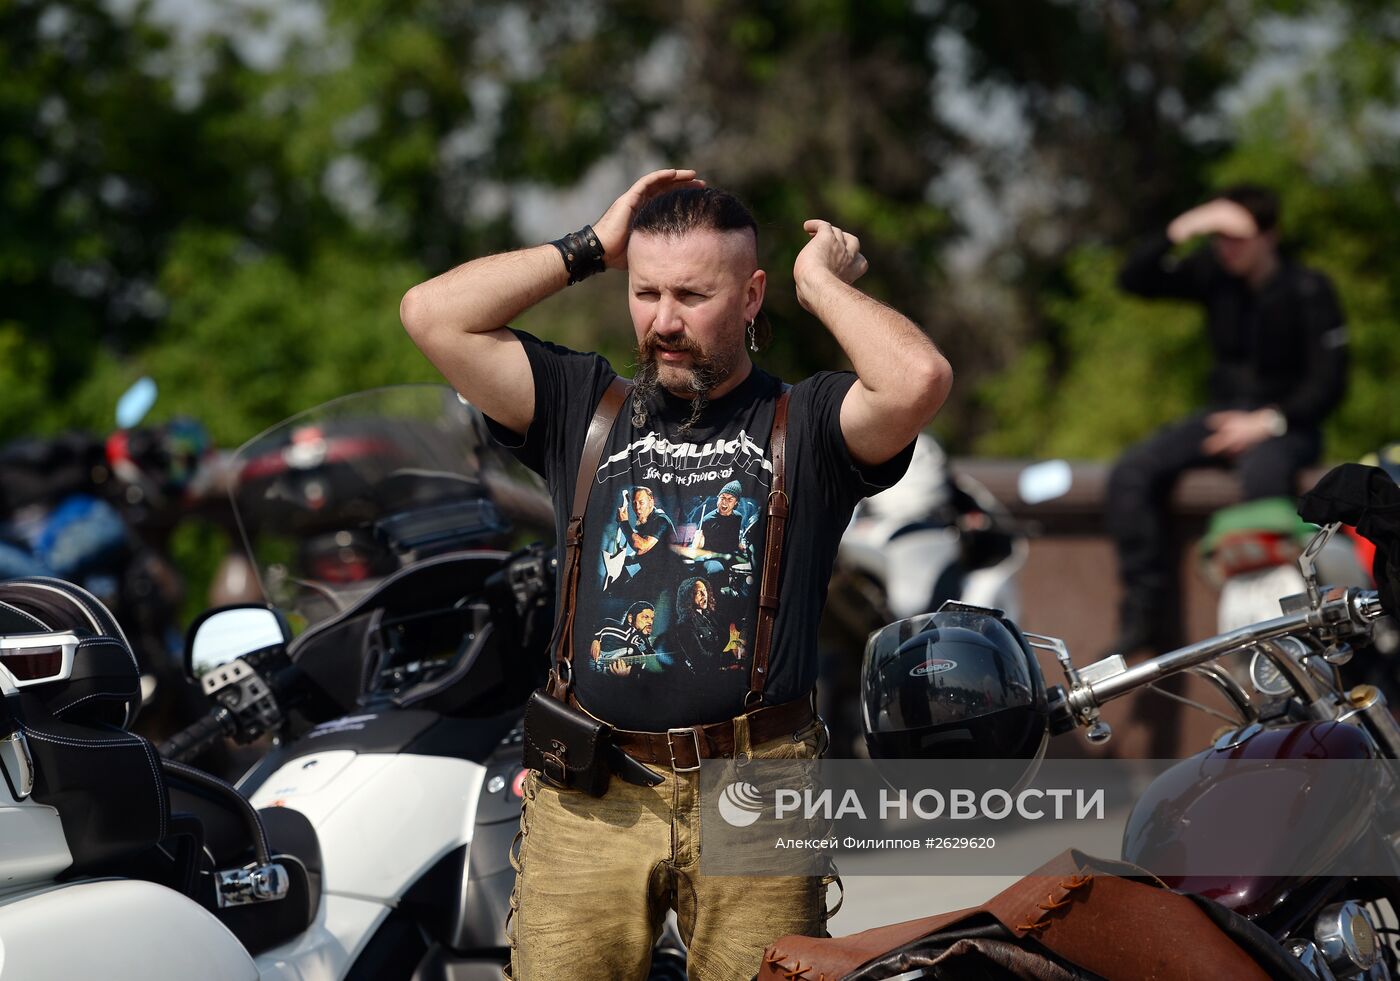 Мотопробег байкеров по случаю гибели своего товарища в ДТП в Москве